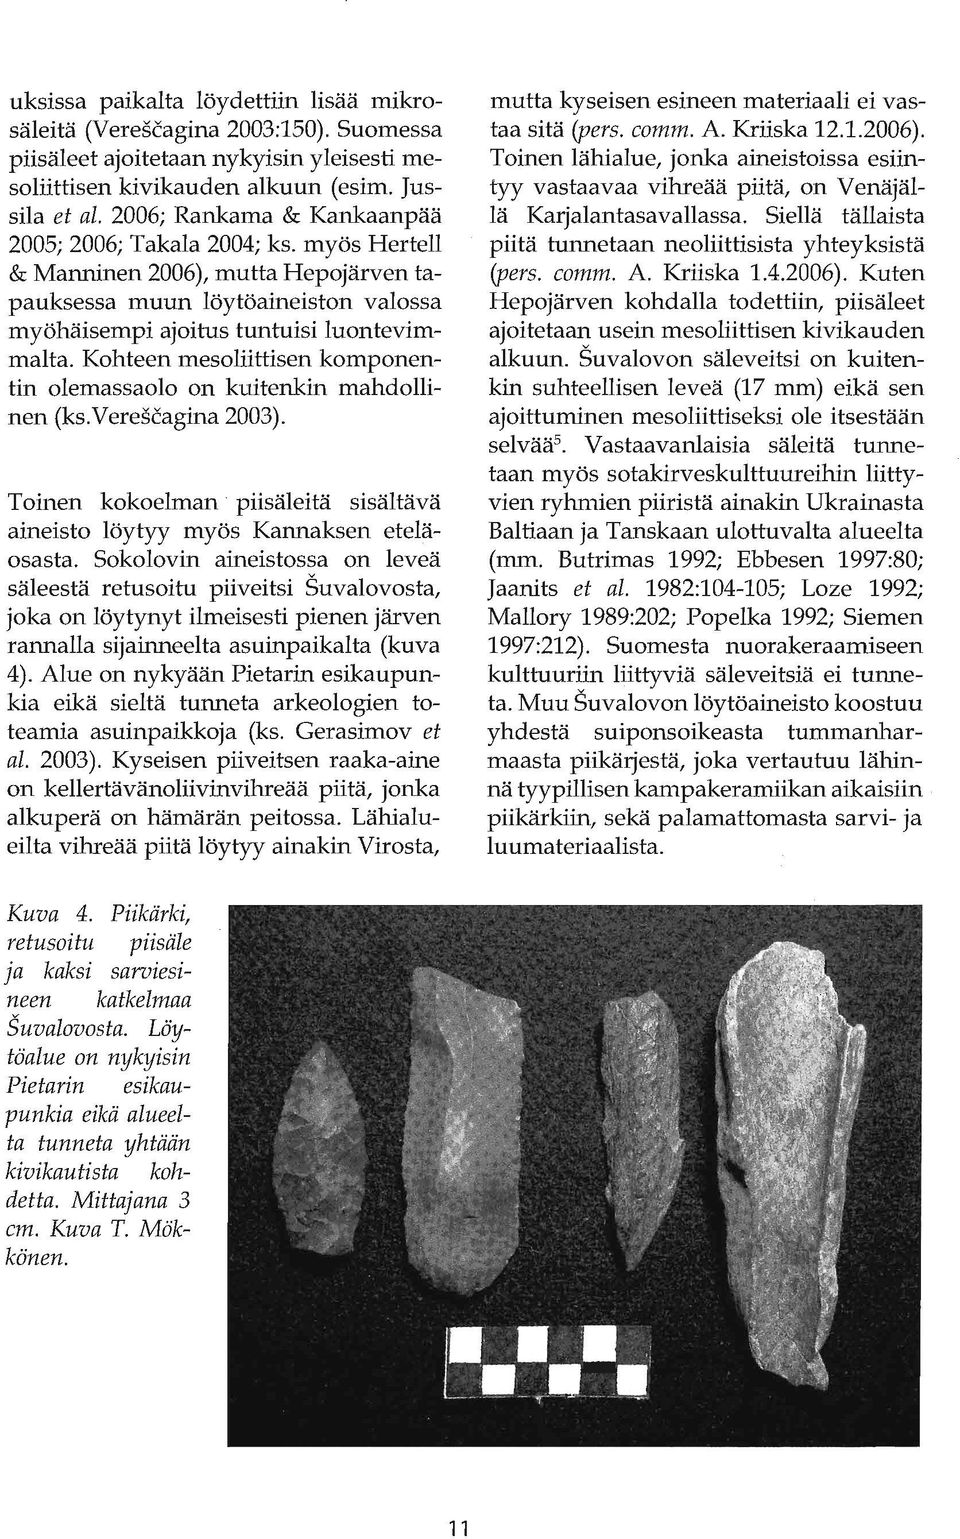 Kohteen mesoliittisen komponentin olemassaolo on kuitenkin mahdollinen (ks.verescagina 2003). Toinen kokoelman piisäleitä sisältävä aineisto löytyy myös Kannaksen eteläosasta.